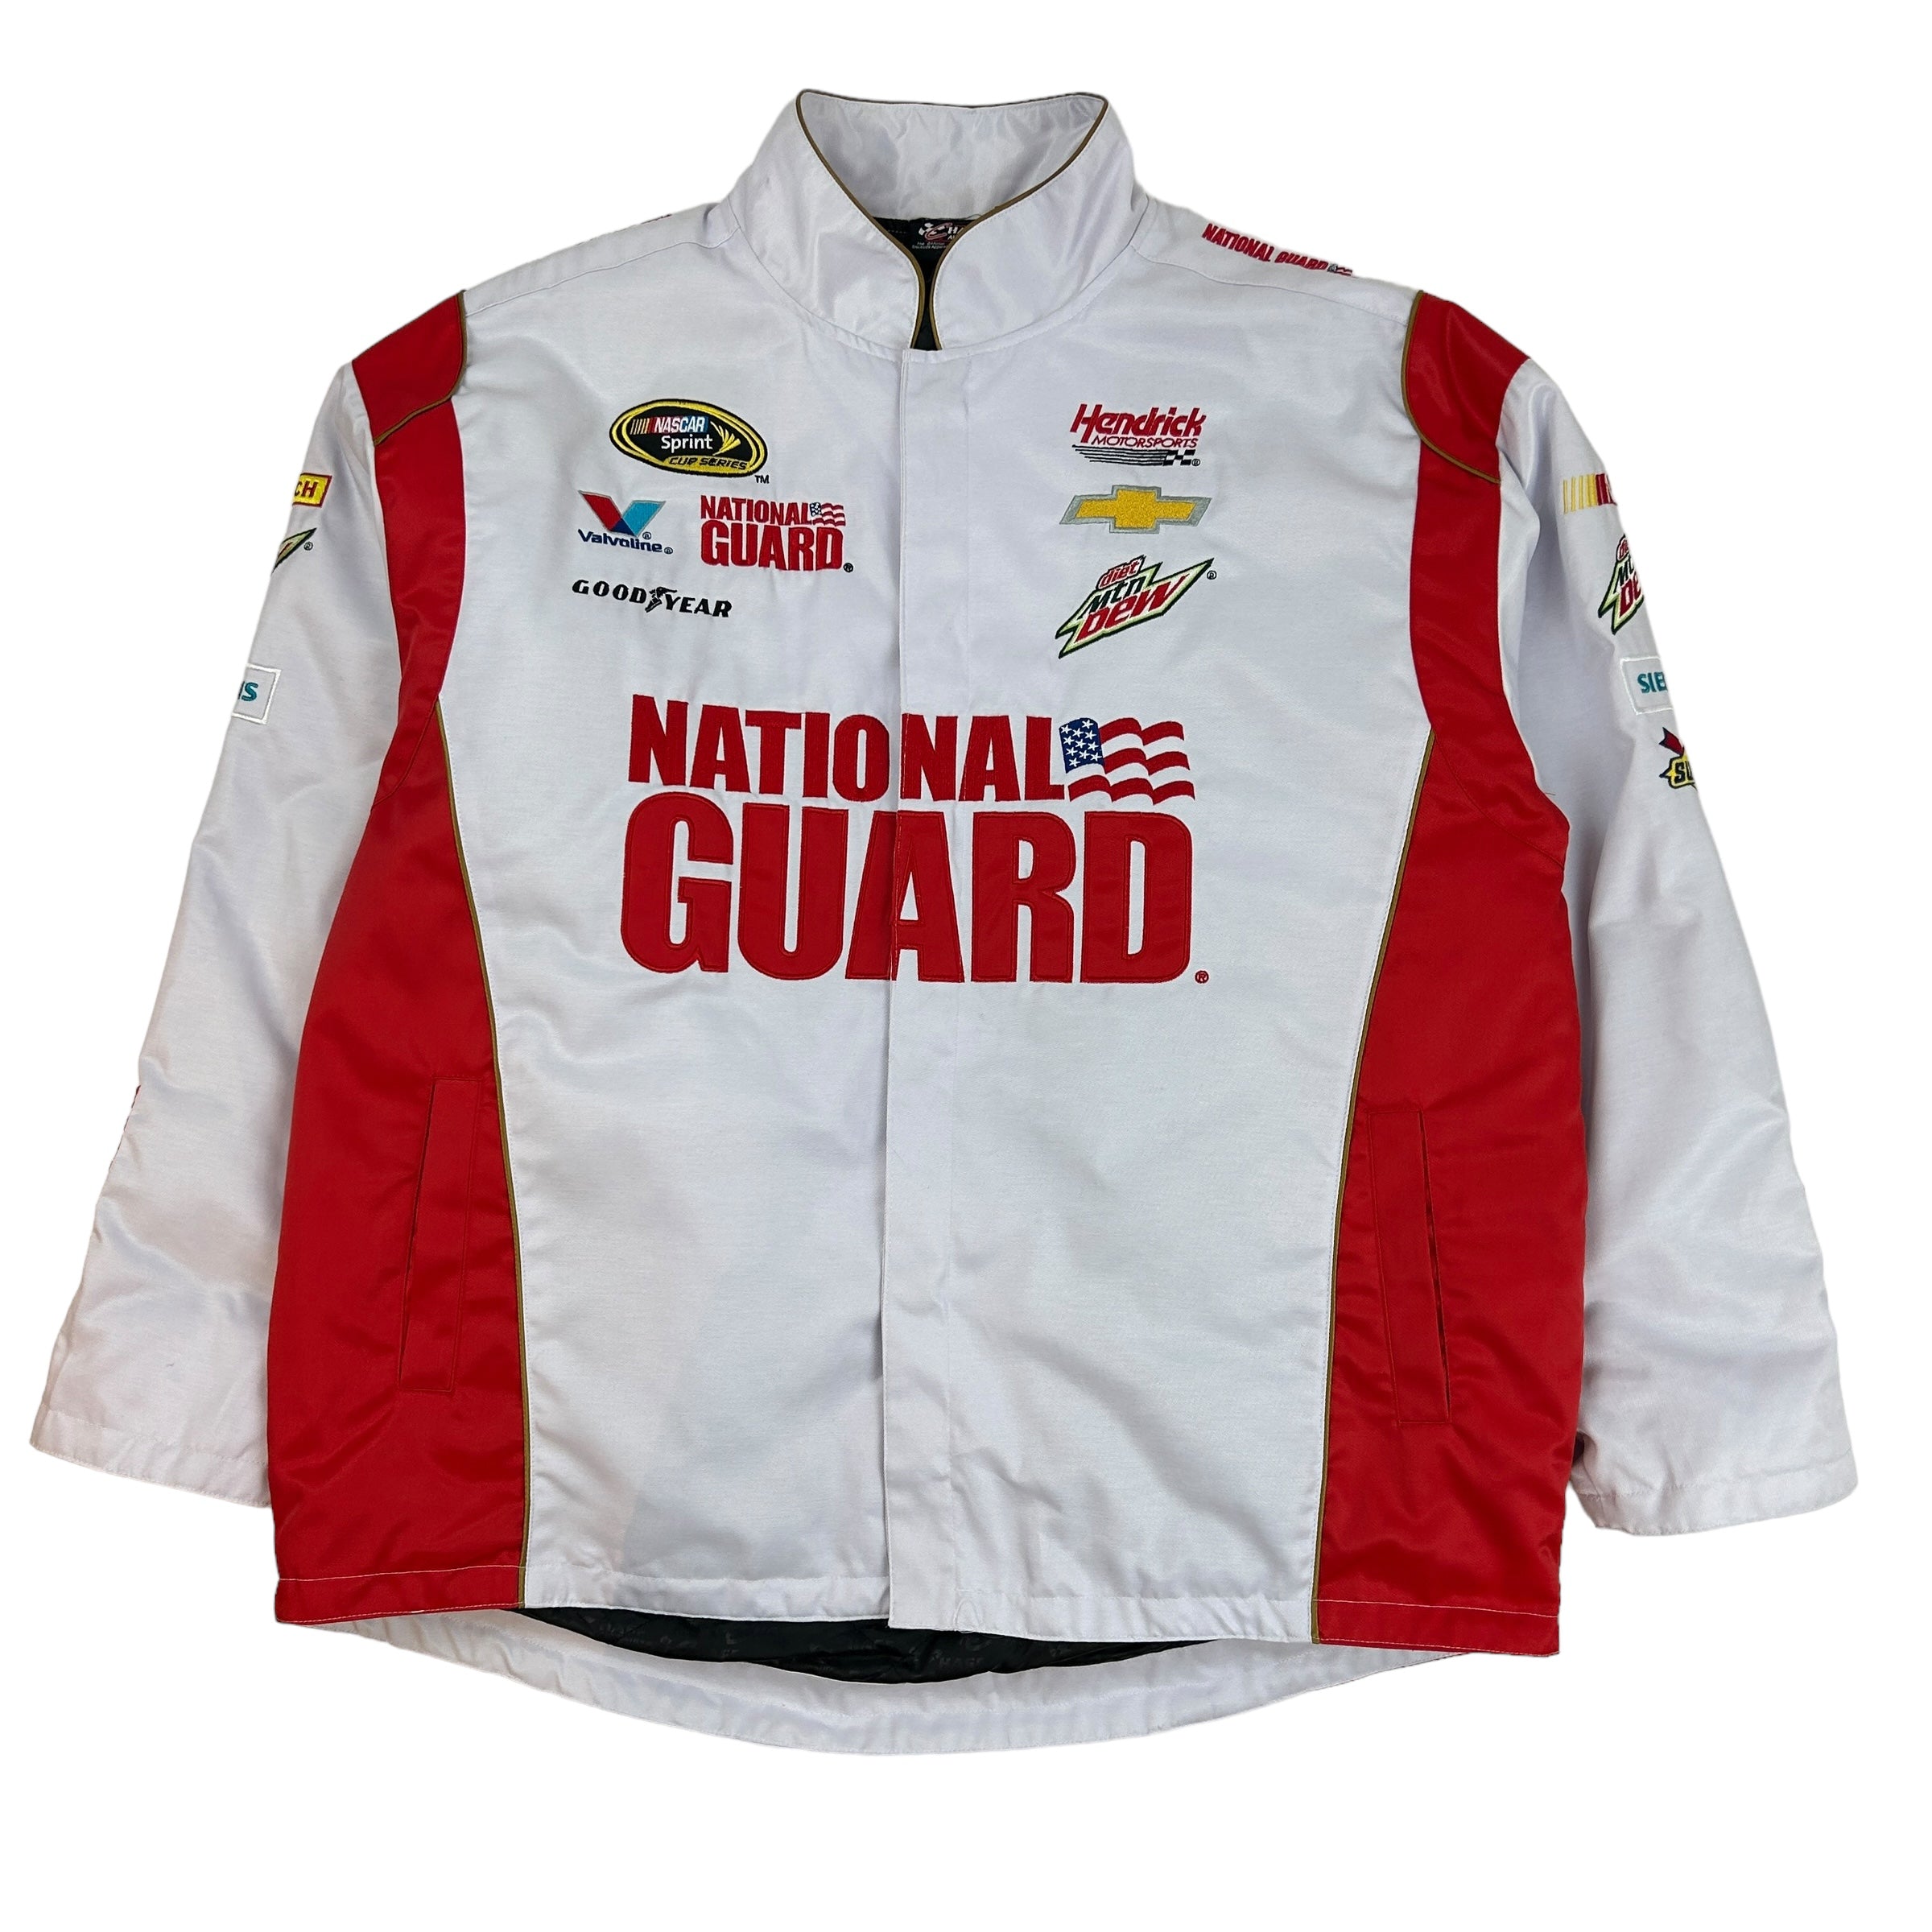 Vintage National Guard Nascar Race Jacket